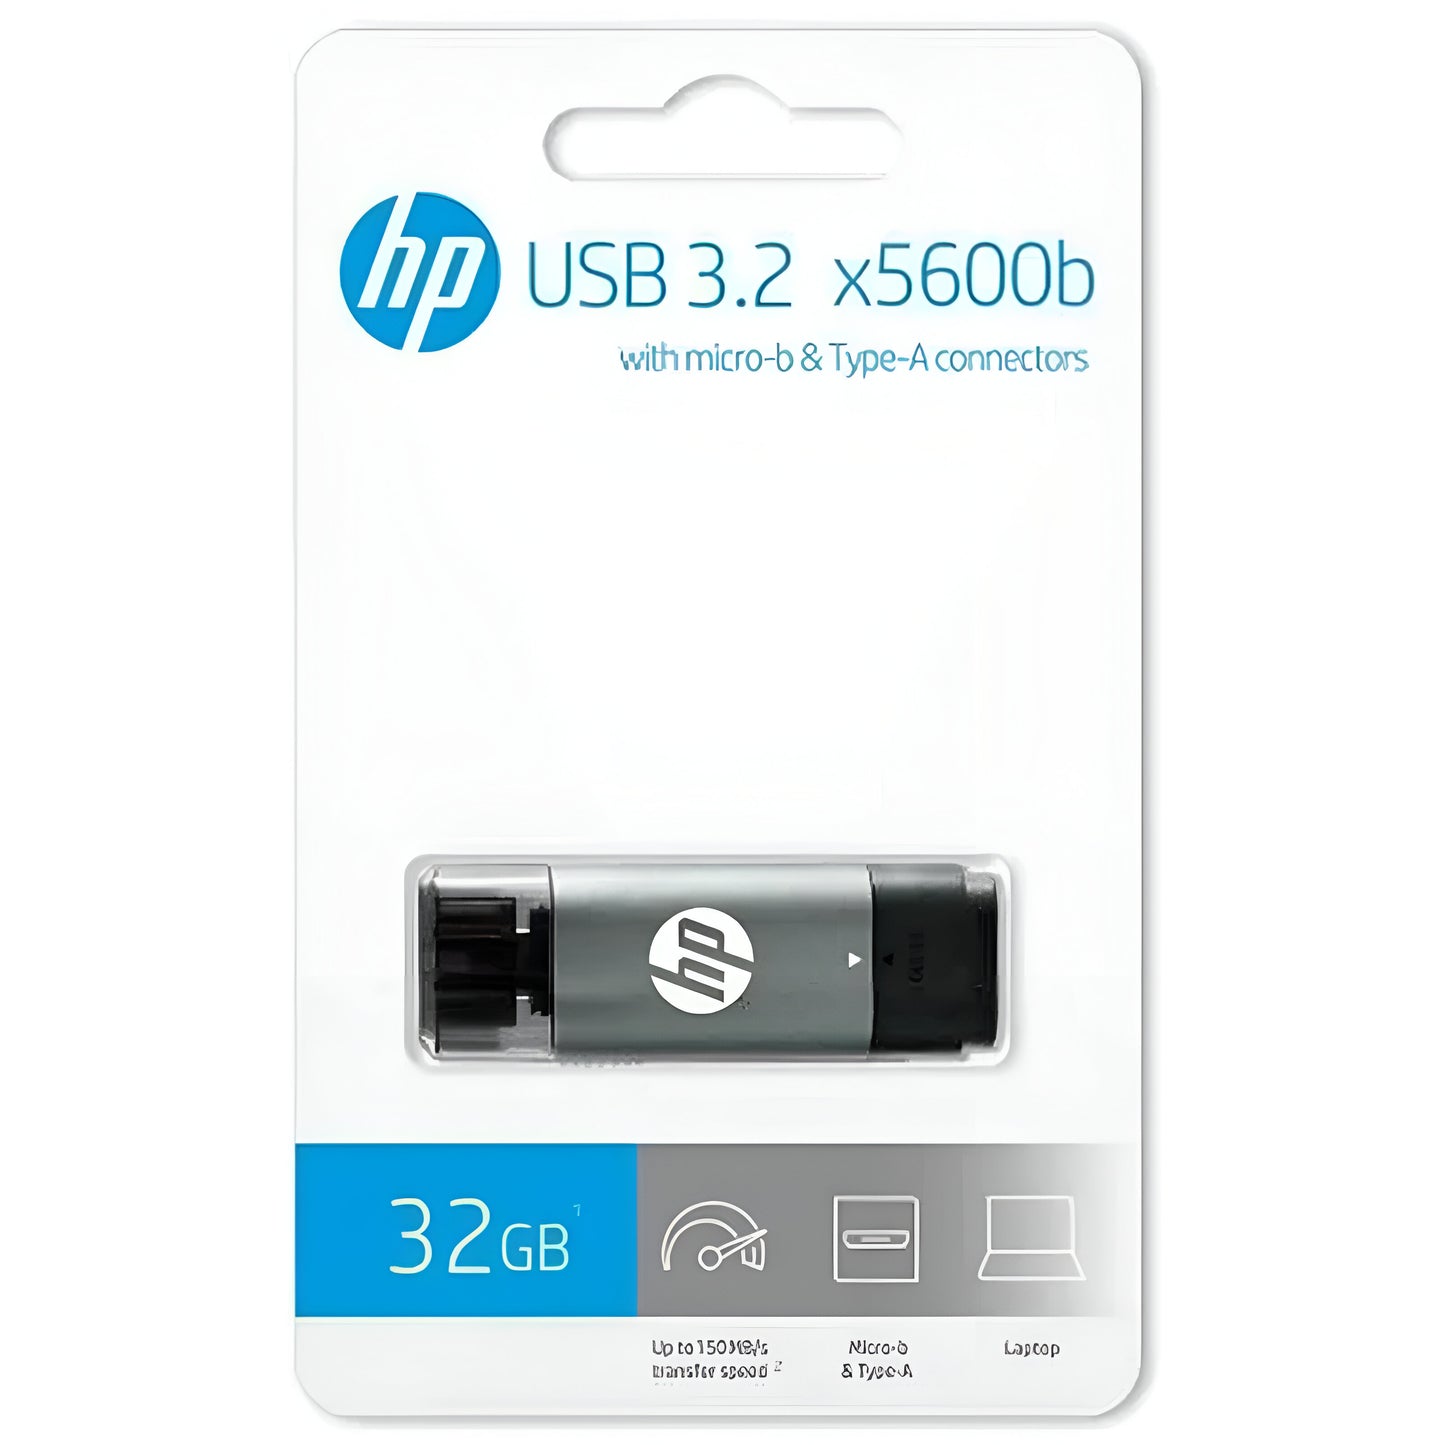 HP X5600B 32GB USB 3.2 Flash Drive 2Yr Wty w/ Micro-USB Adapter